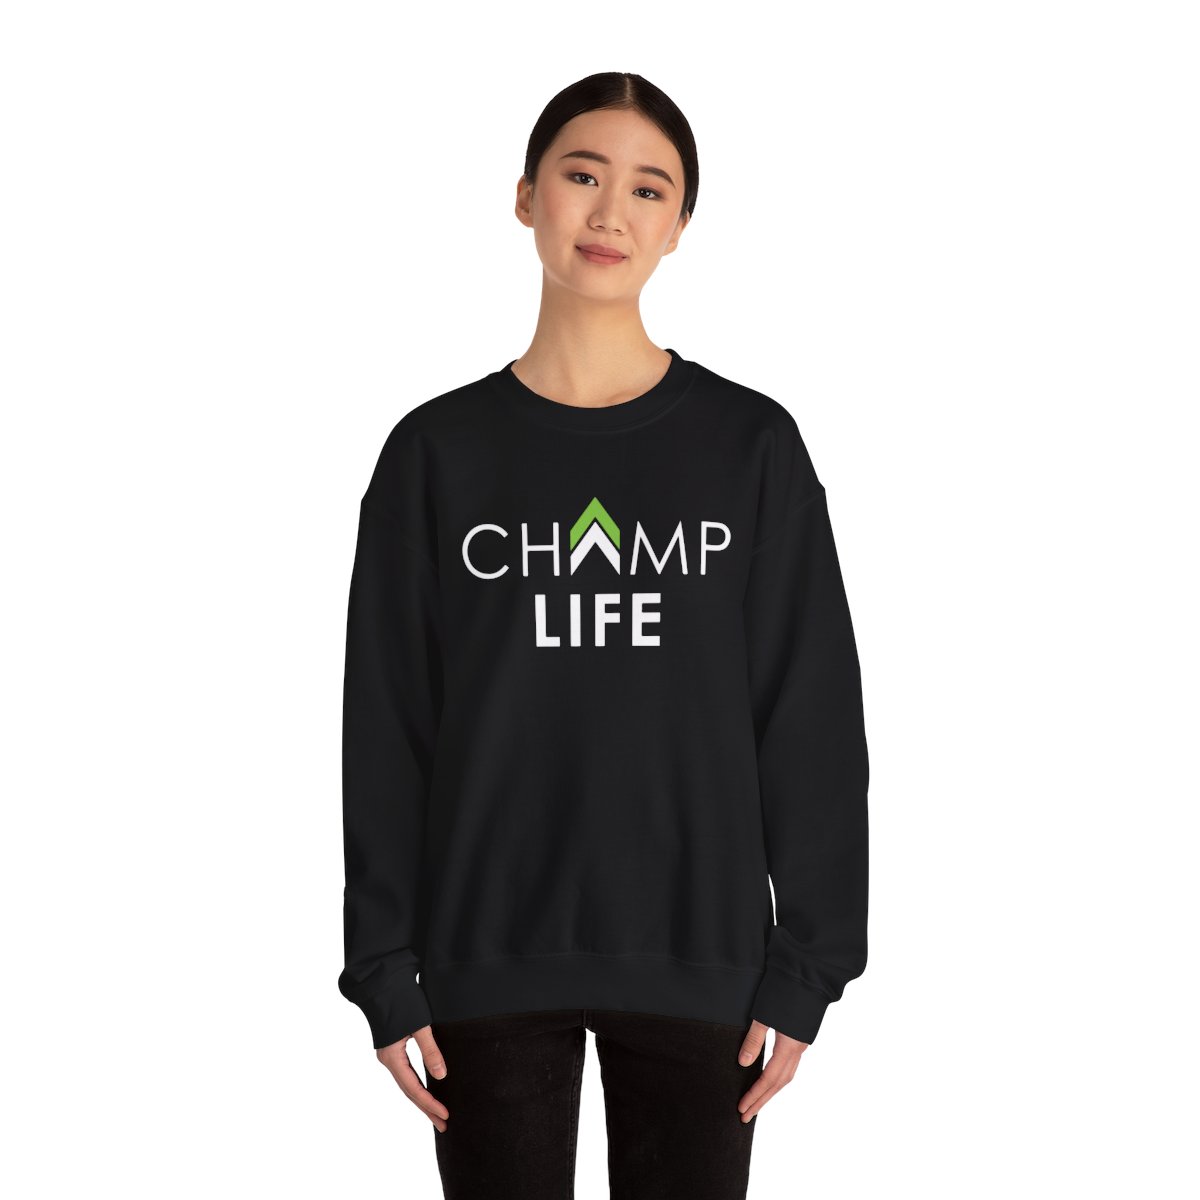 Champ Life Unisex Crewneck Sweatshirt - Black product thumbnail image